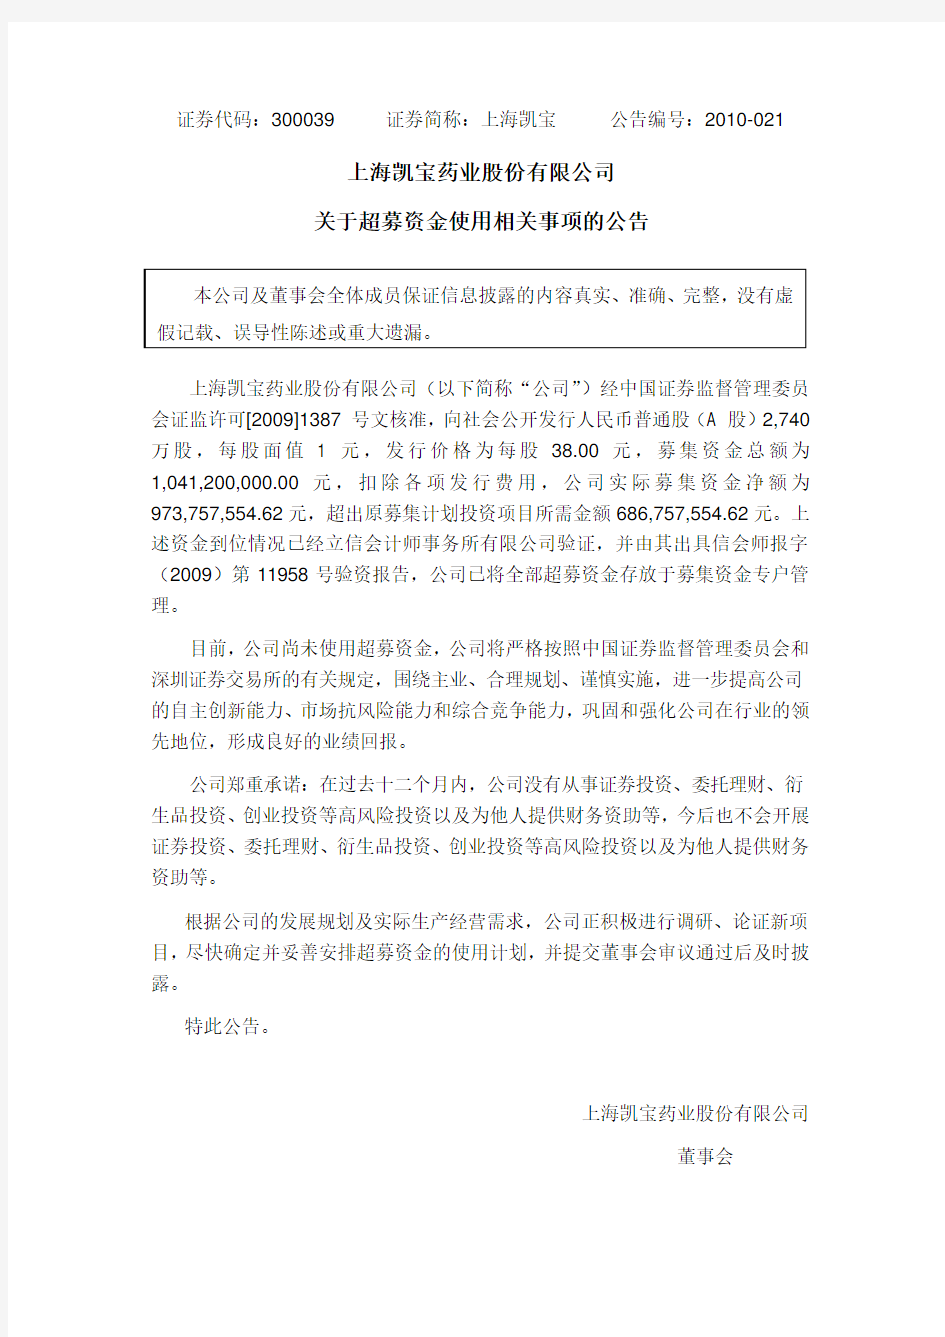 上海凯宝：关于超募资金使用相关事项的公告 2010-07-08